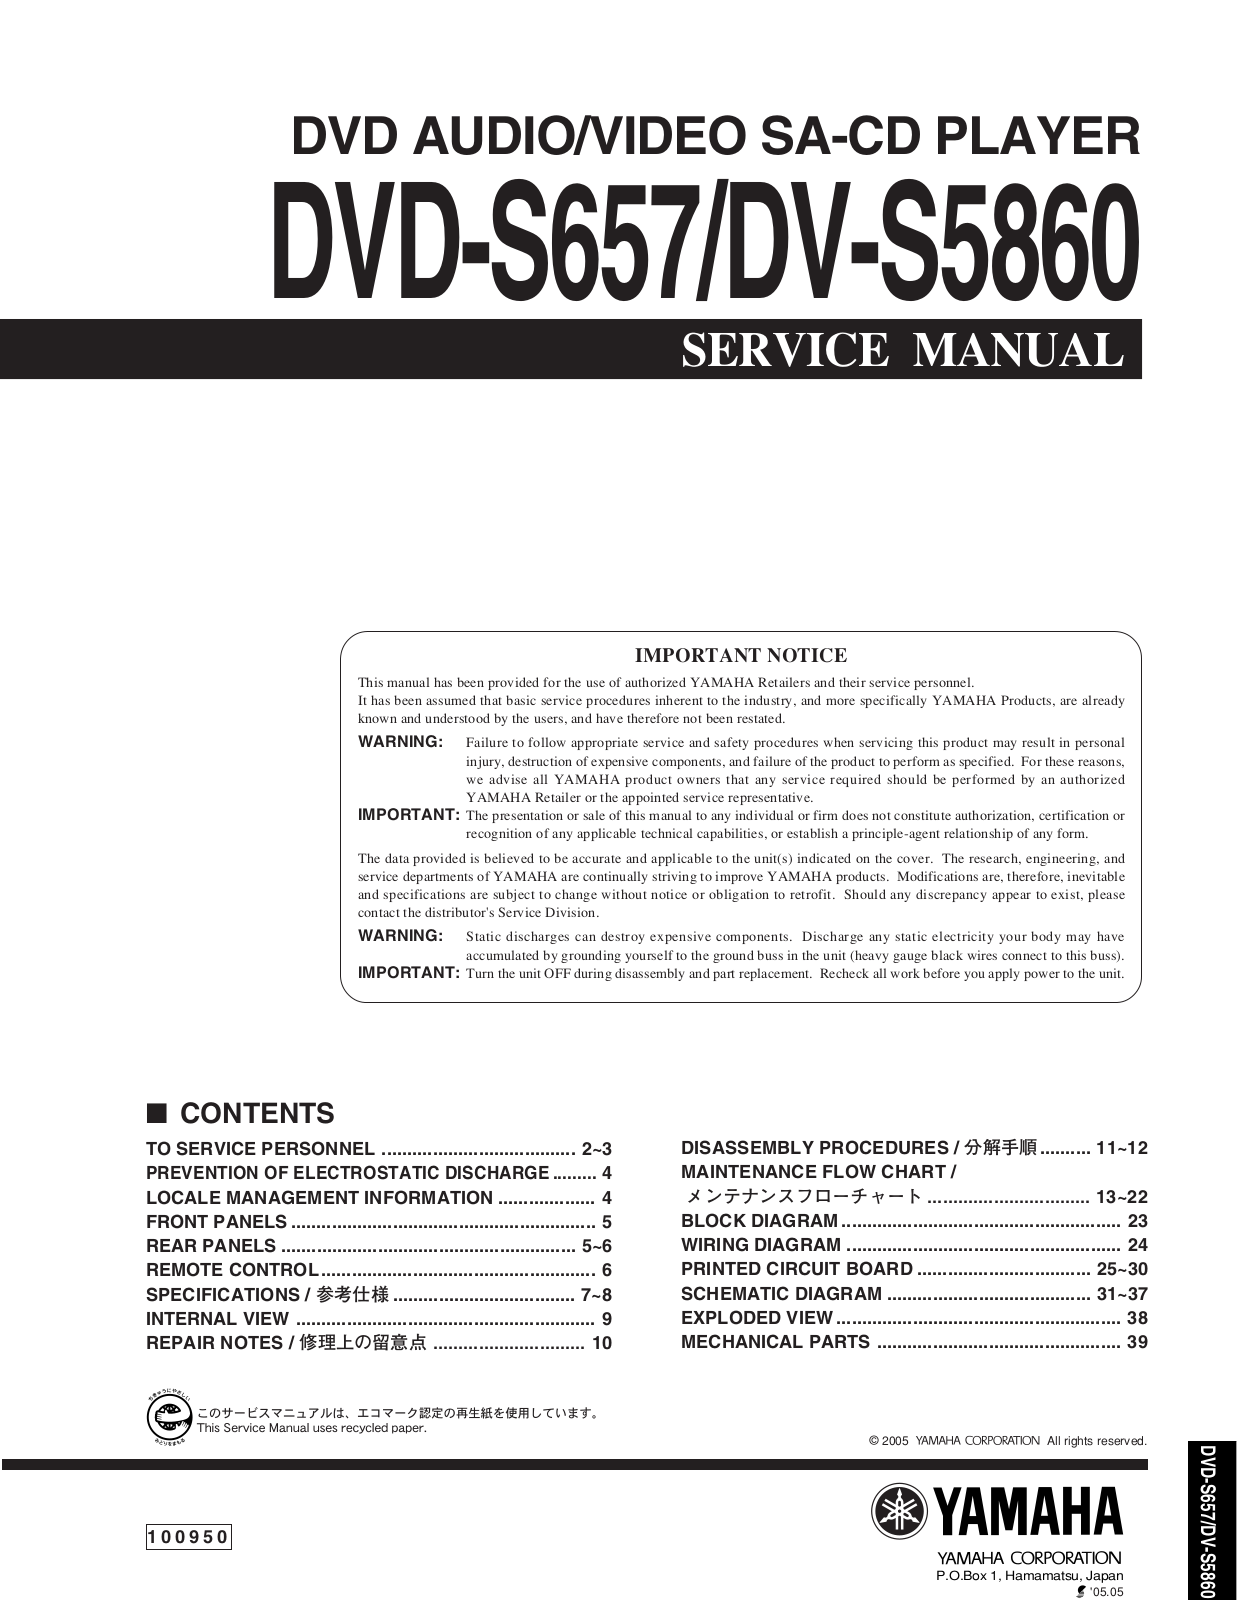 Yamaha DVS-5860 Service manual